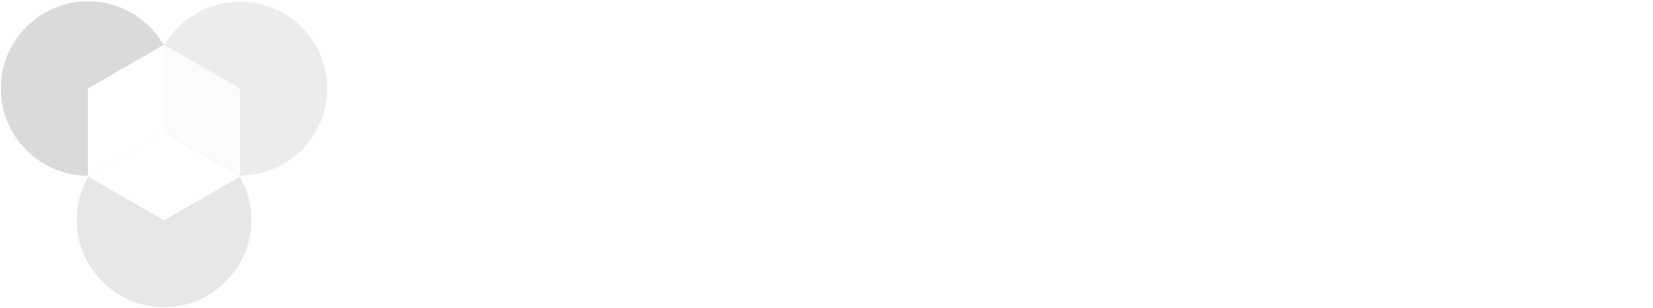 Teamable logo